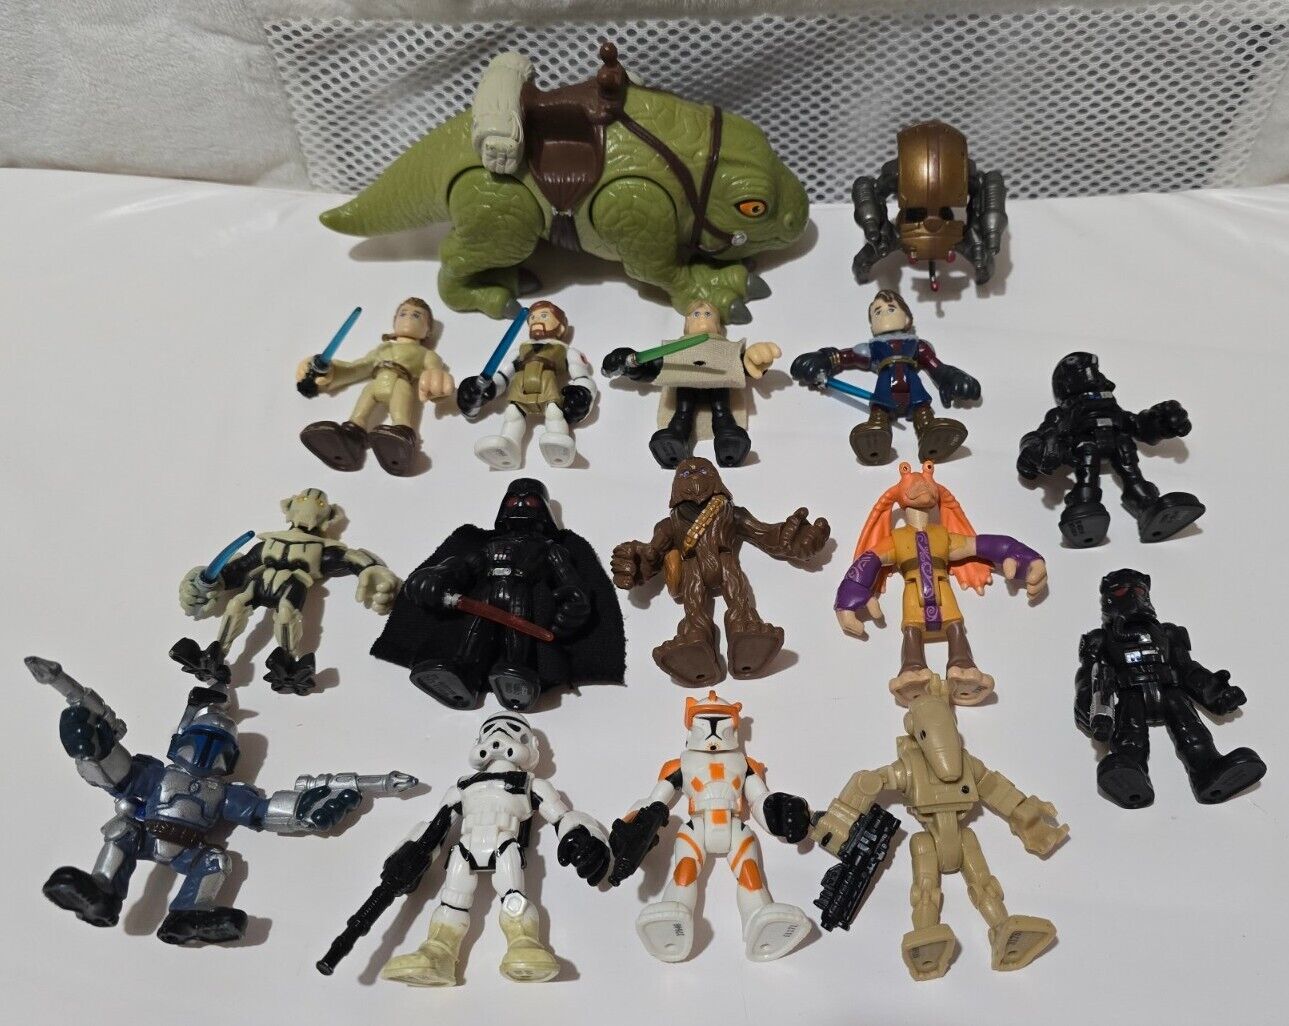 Star Wars Action Figures Lot of 16, Fischer Price Playskool Imaginext 